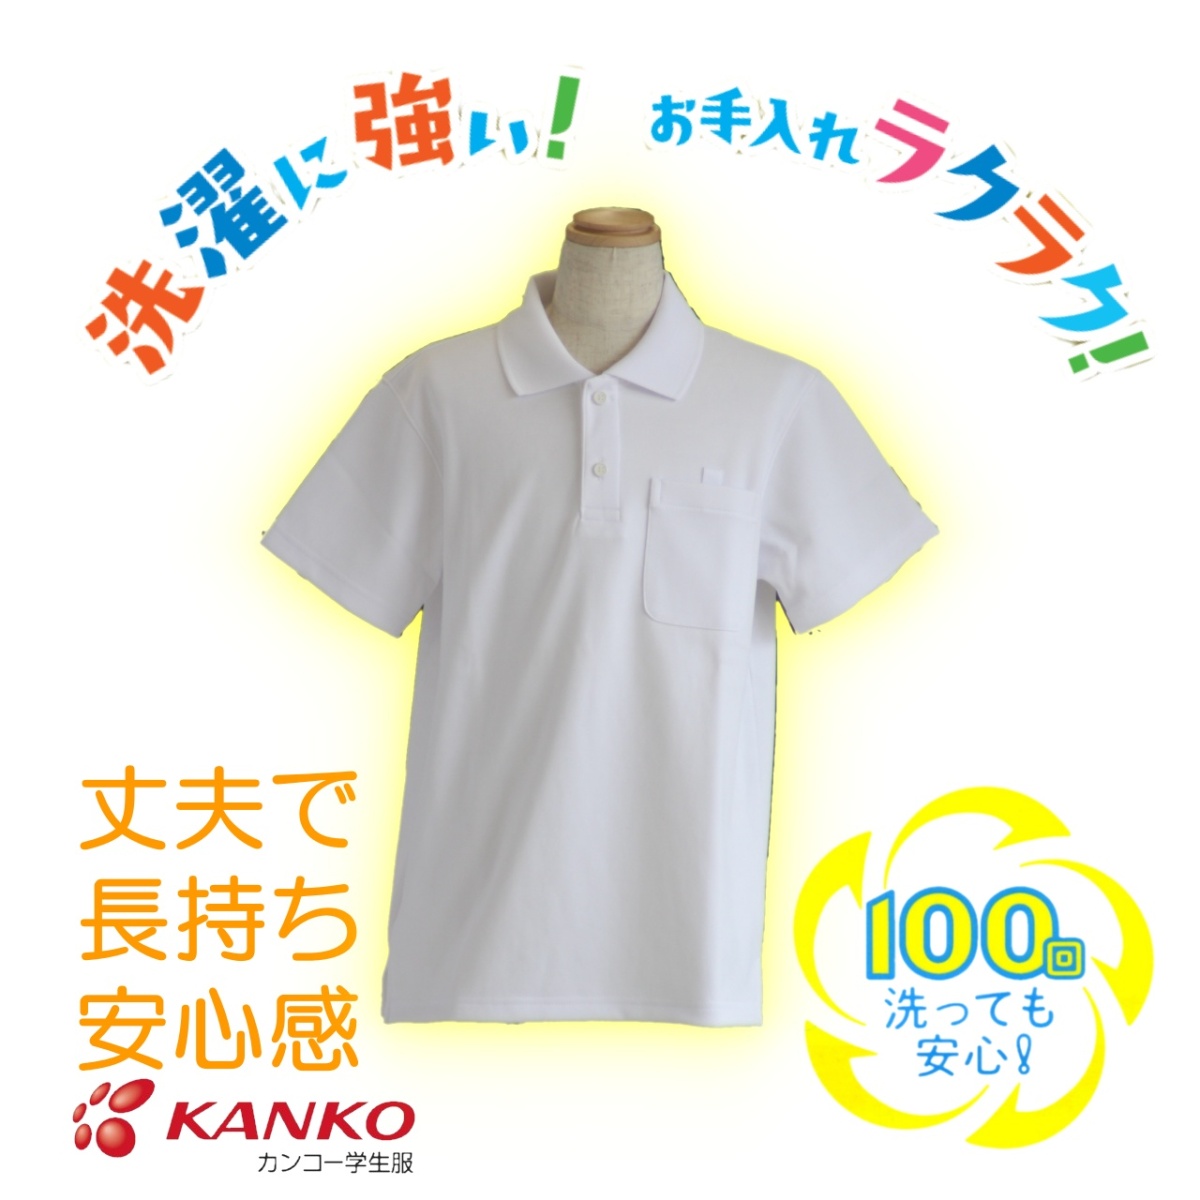 [ бесплатная доставка ][ для мужчин и женщин ][2 листов комплект ] рубашка-поло с коротким рукавом ученик начальной школы can ko-KANKO KTW4691 school Polo крепкий долговечный белый студент 